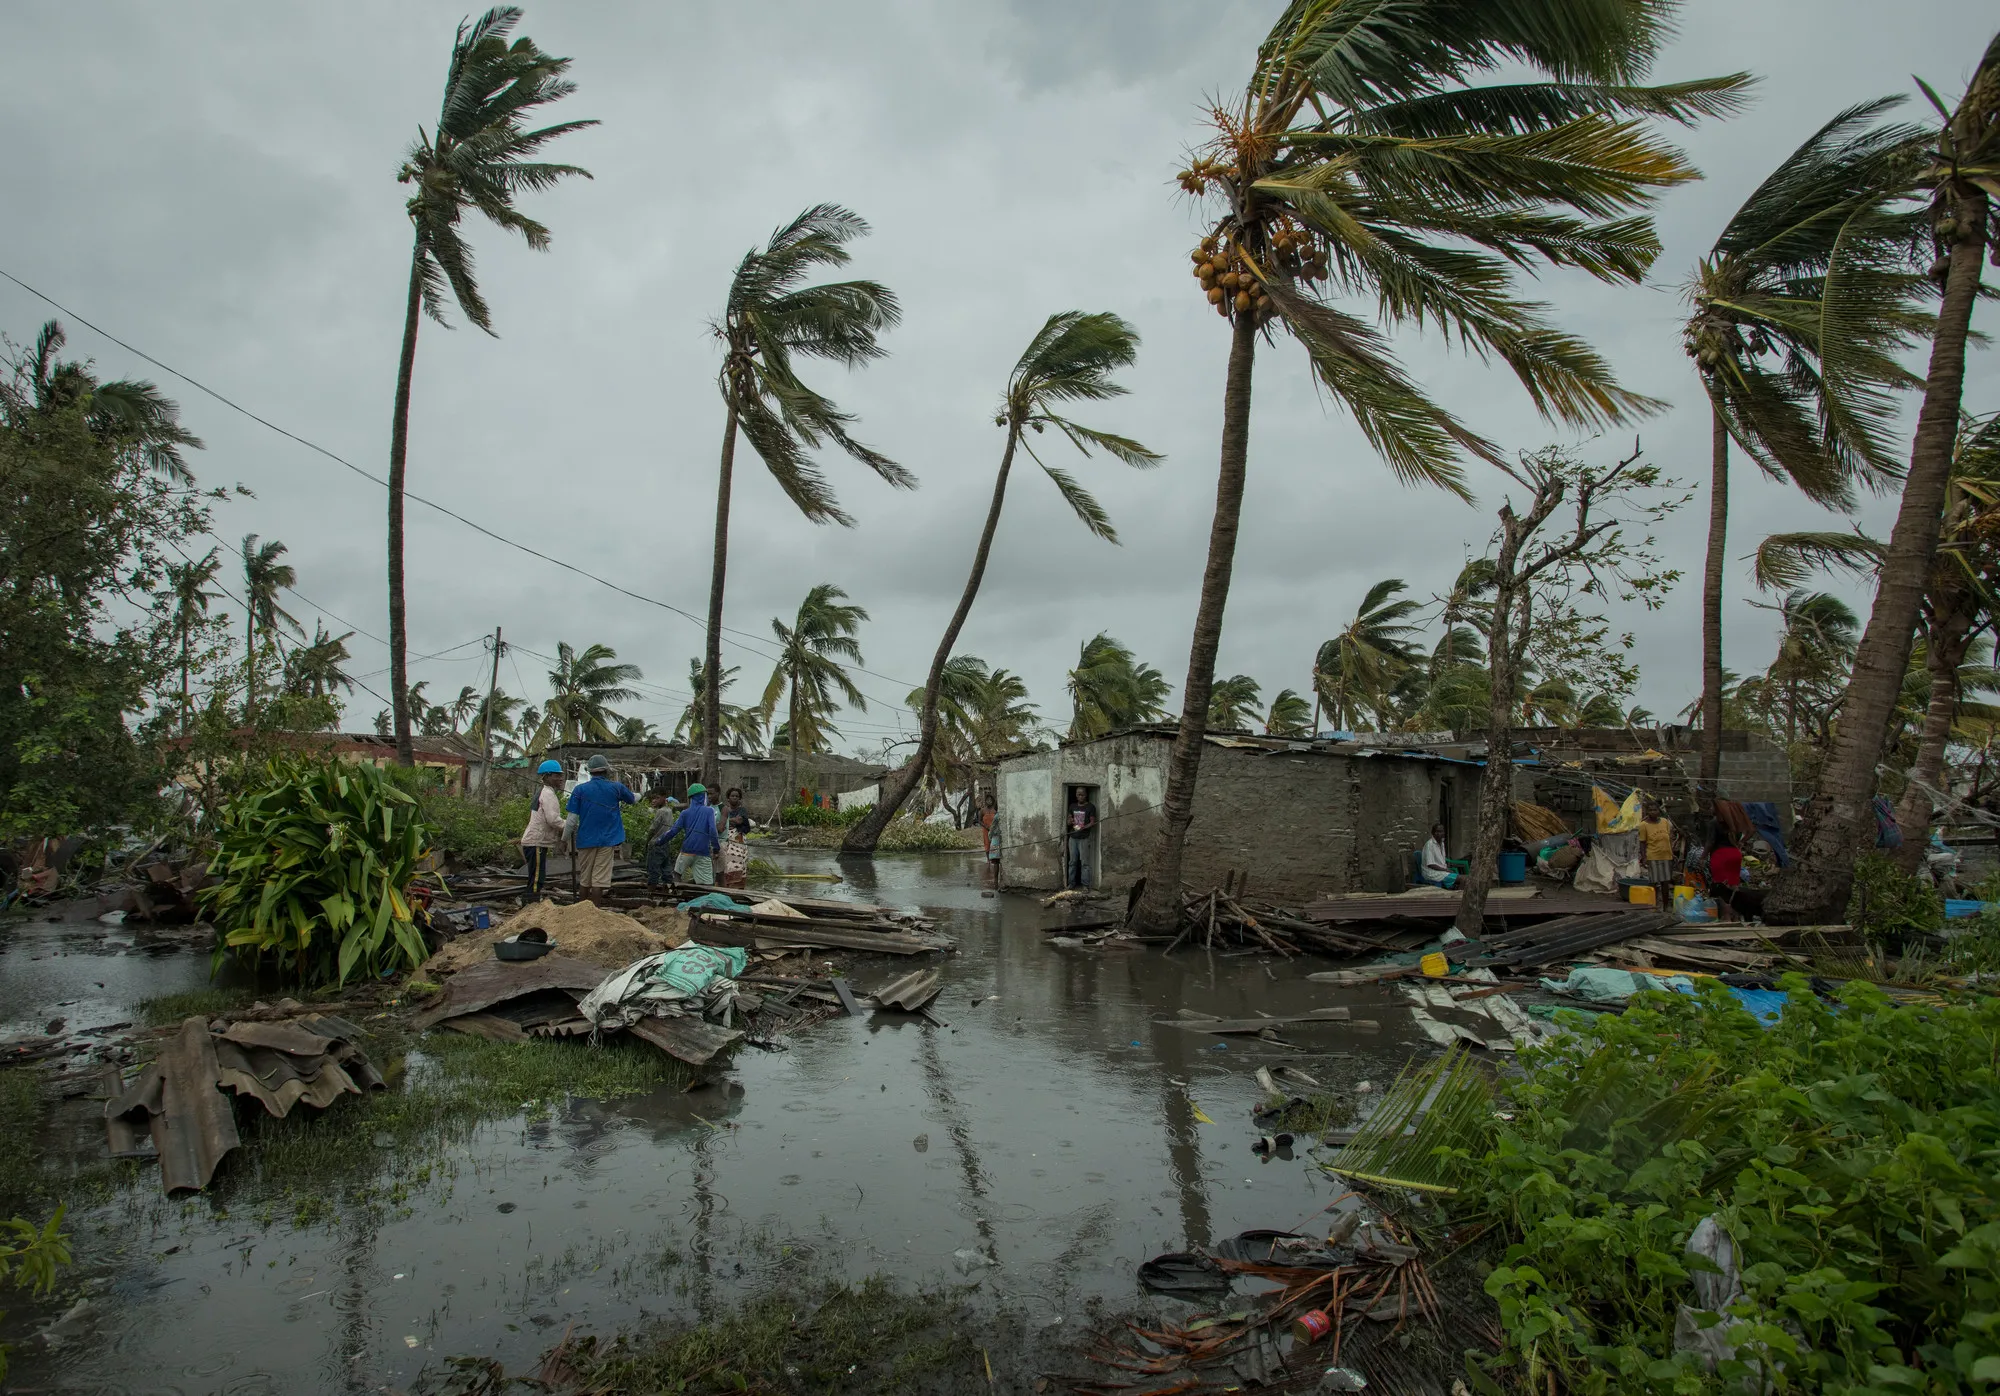 Beira, Moçambique depois que o ciclone Idai destruiu a cidade. Foto: Josh Estey / CARE